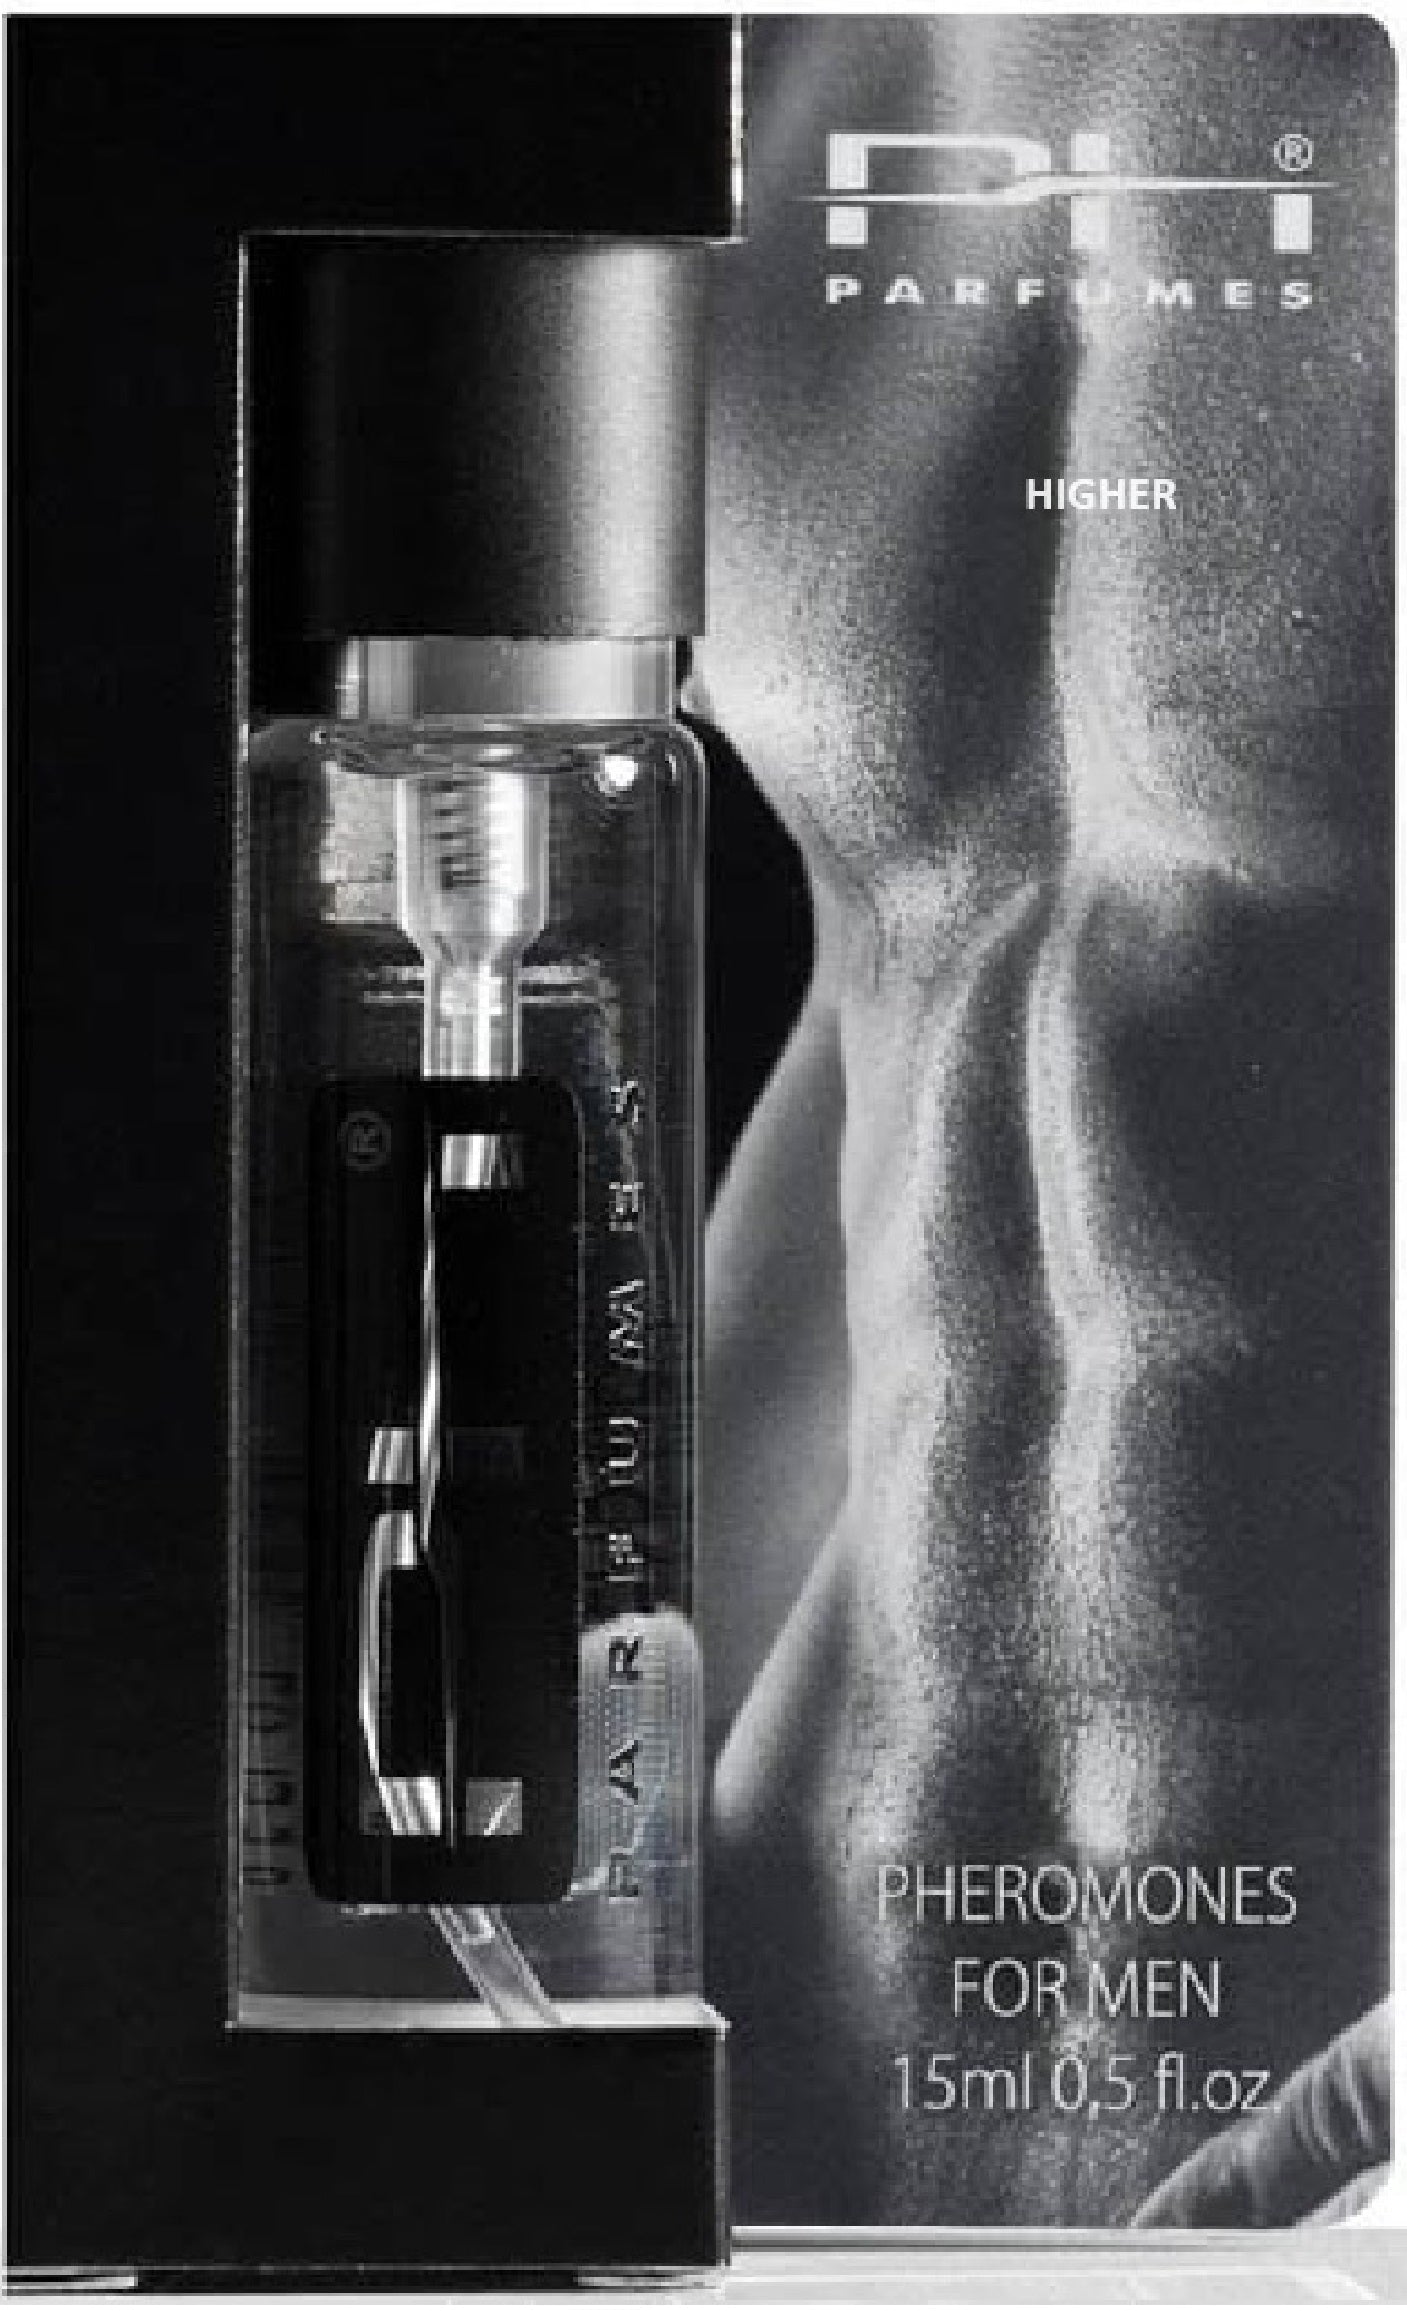 HIGHER Pheromones For Men - Perfume 15 ml